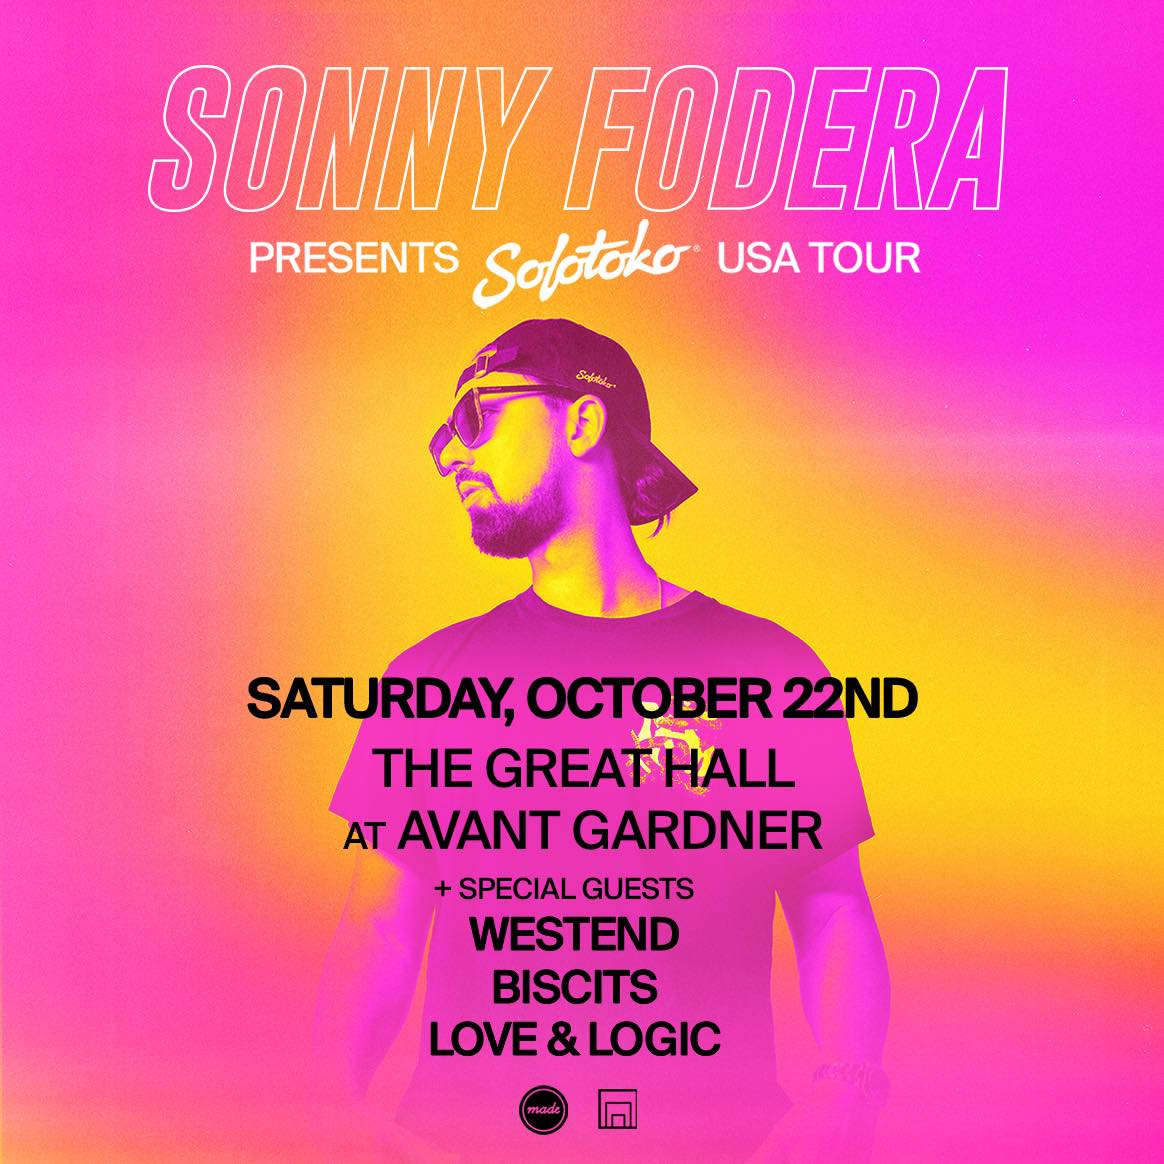 Sonny Fodera Bersiap Untuk Showcase NYC Solotoko di Avant Gardner